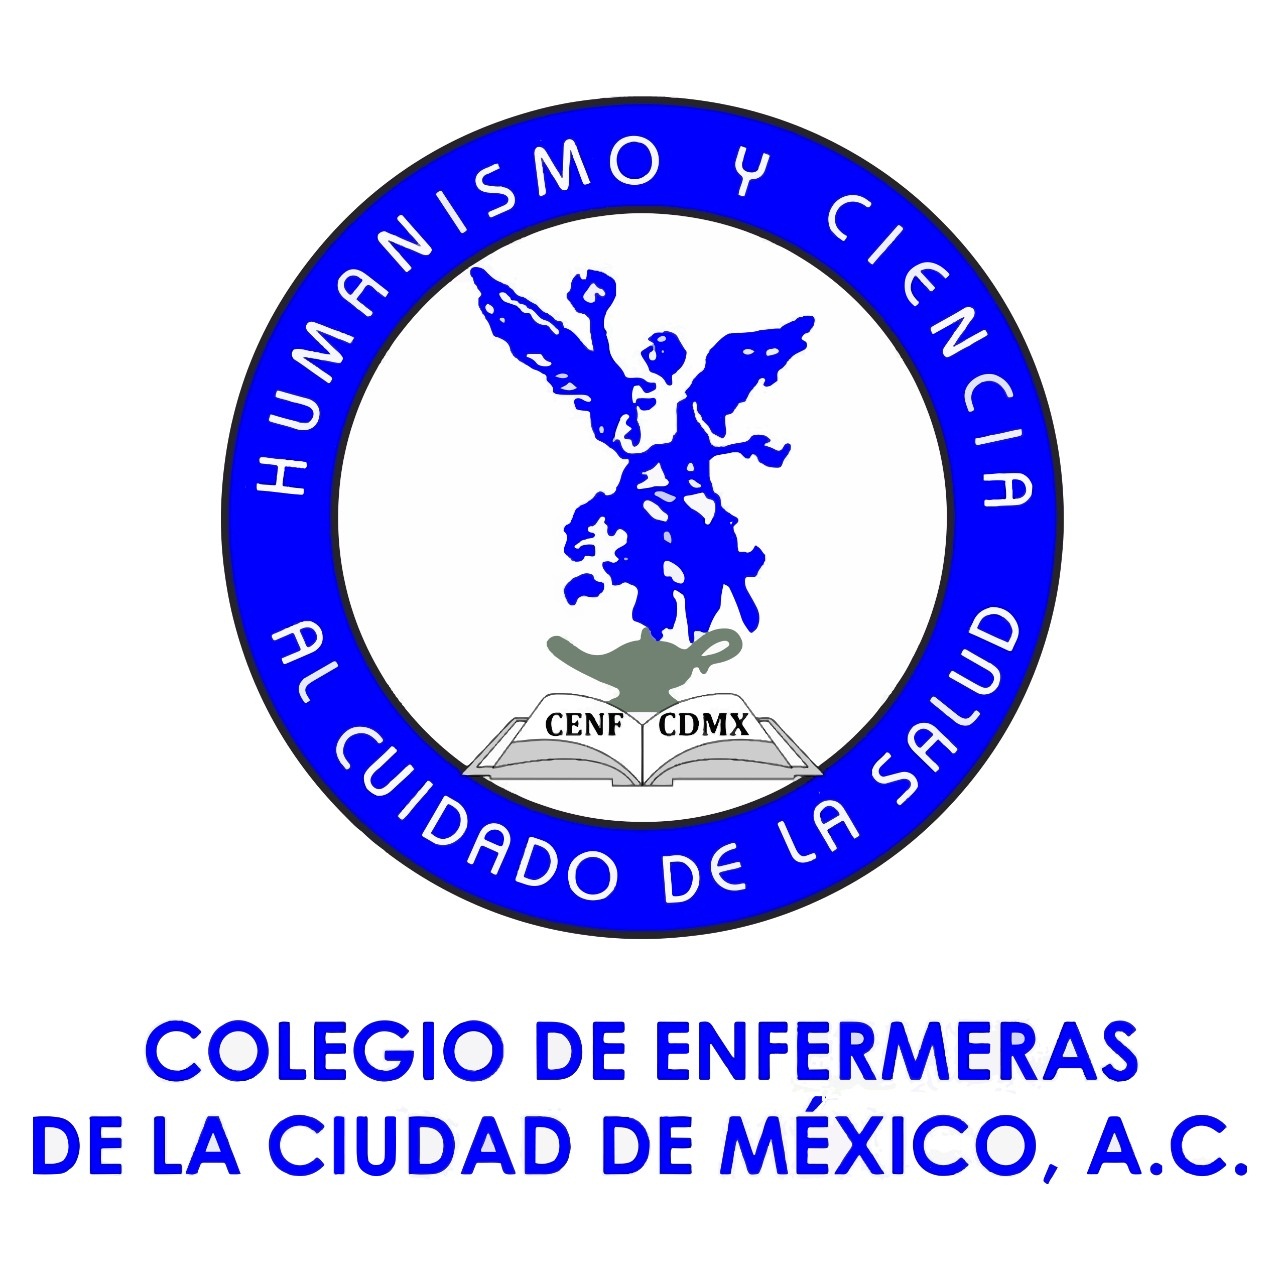 Colegio de Enfermeras de la Cuidad de México A.C.